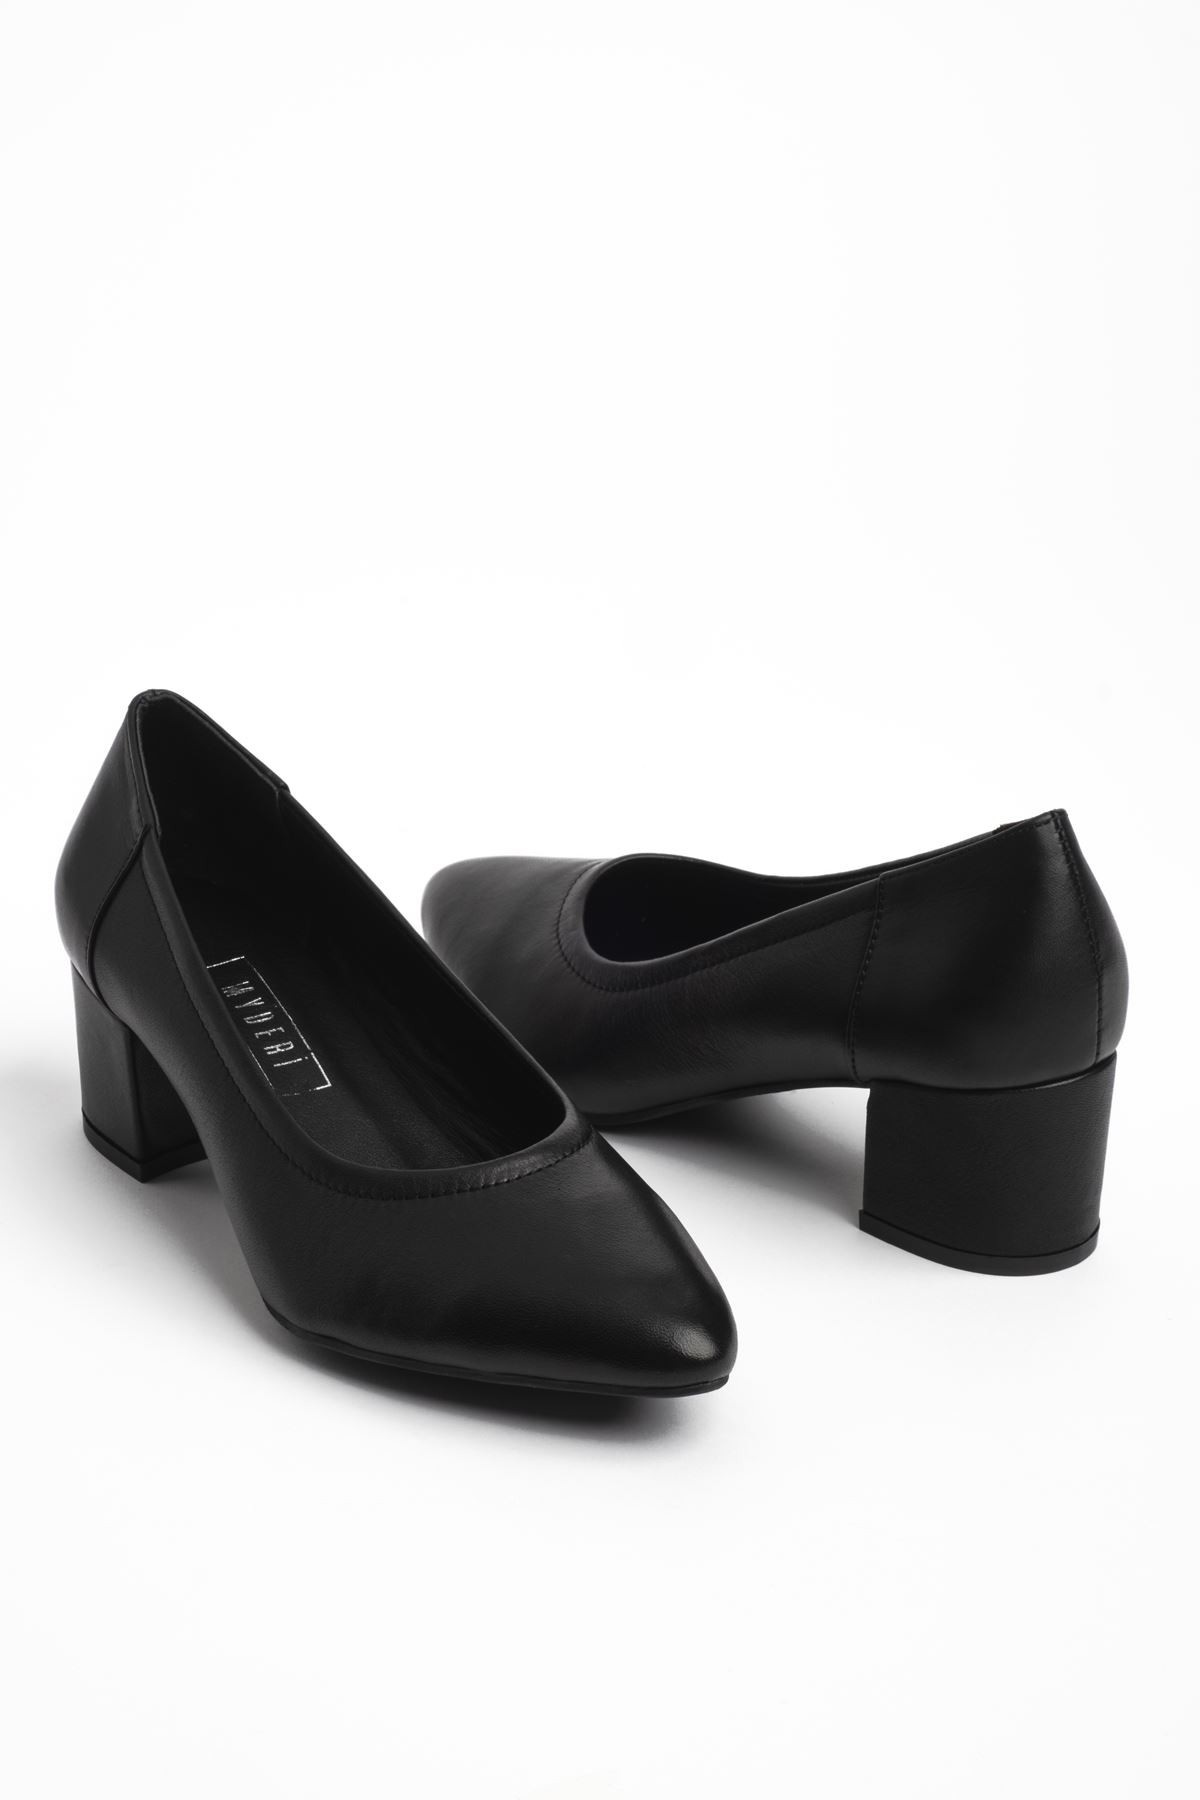 Virtus Kadın Hakiki Deri Topuklu Ayakkabı (b3043) - Siyah